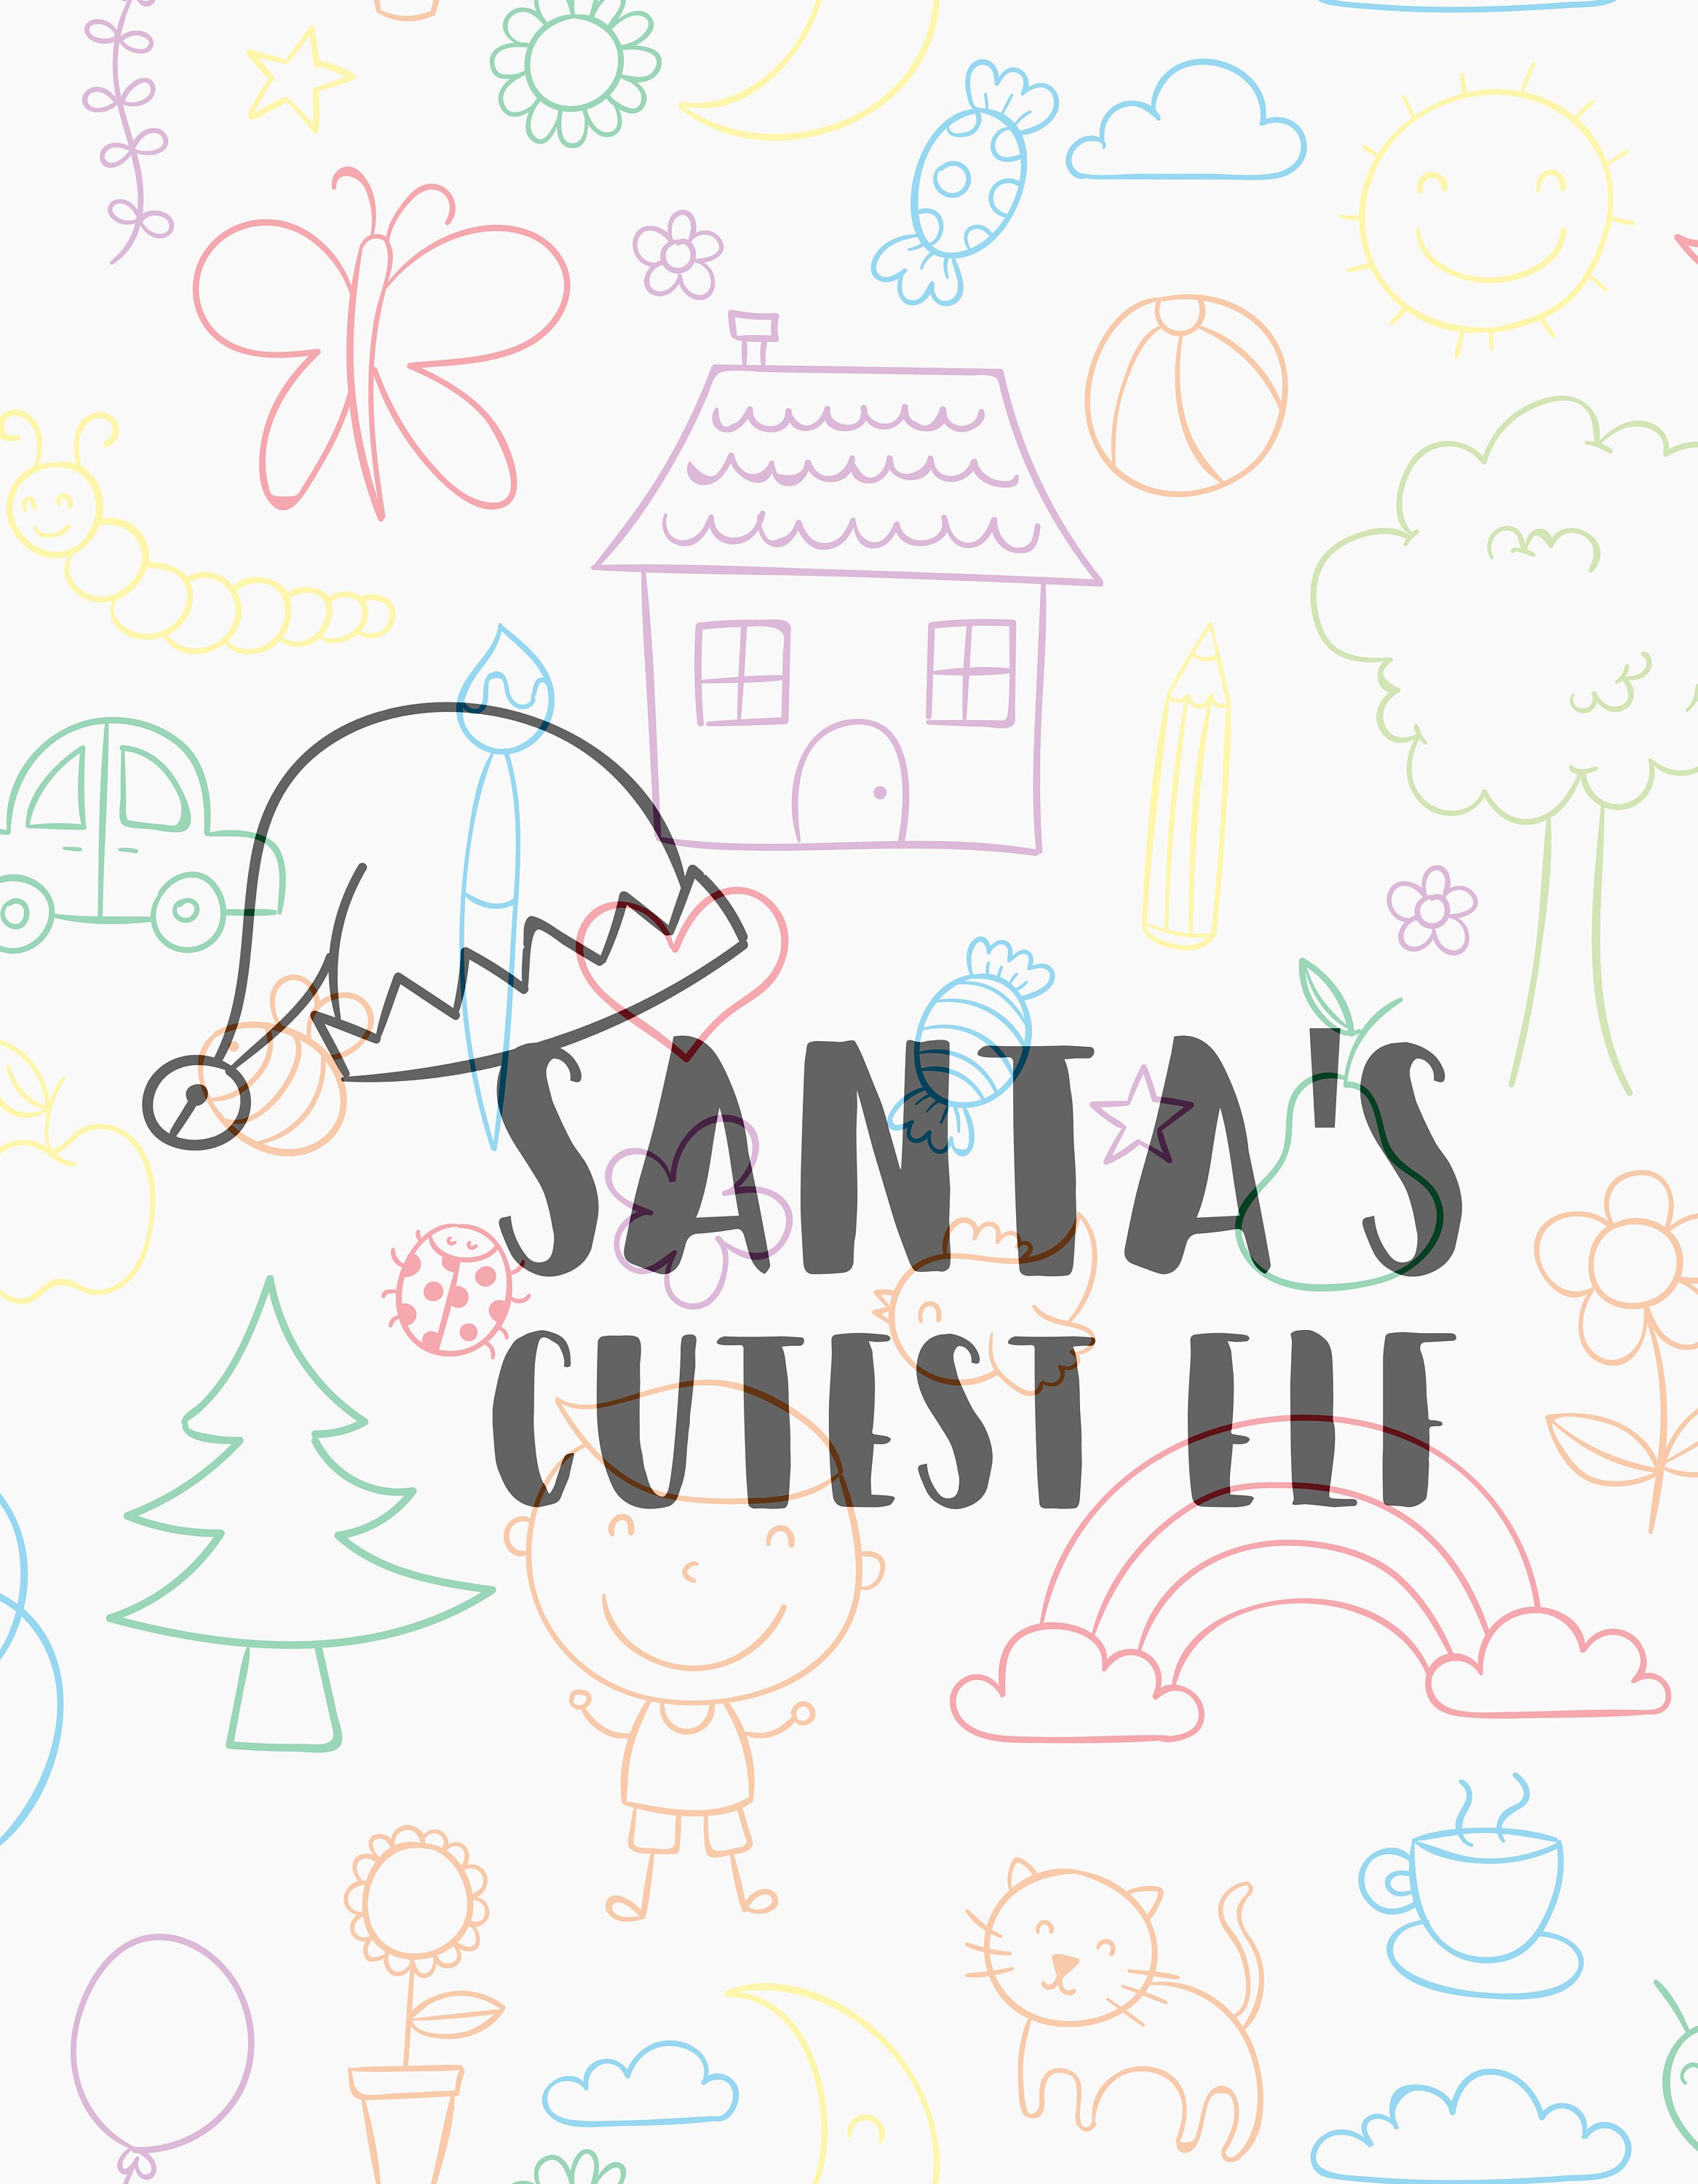 Download Santa's cutest elf SVG file baby svgonesie svgtoddler | Etsy